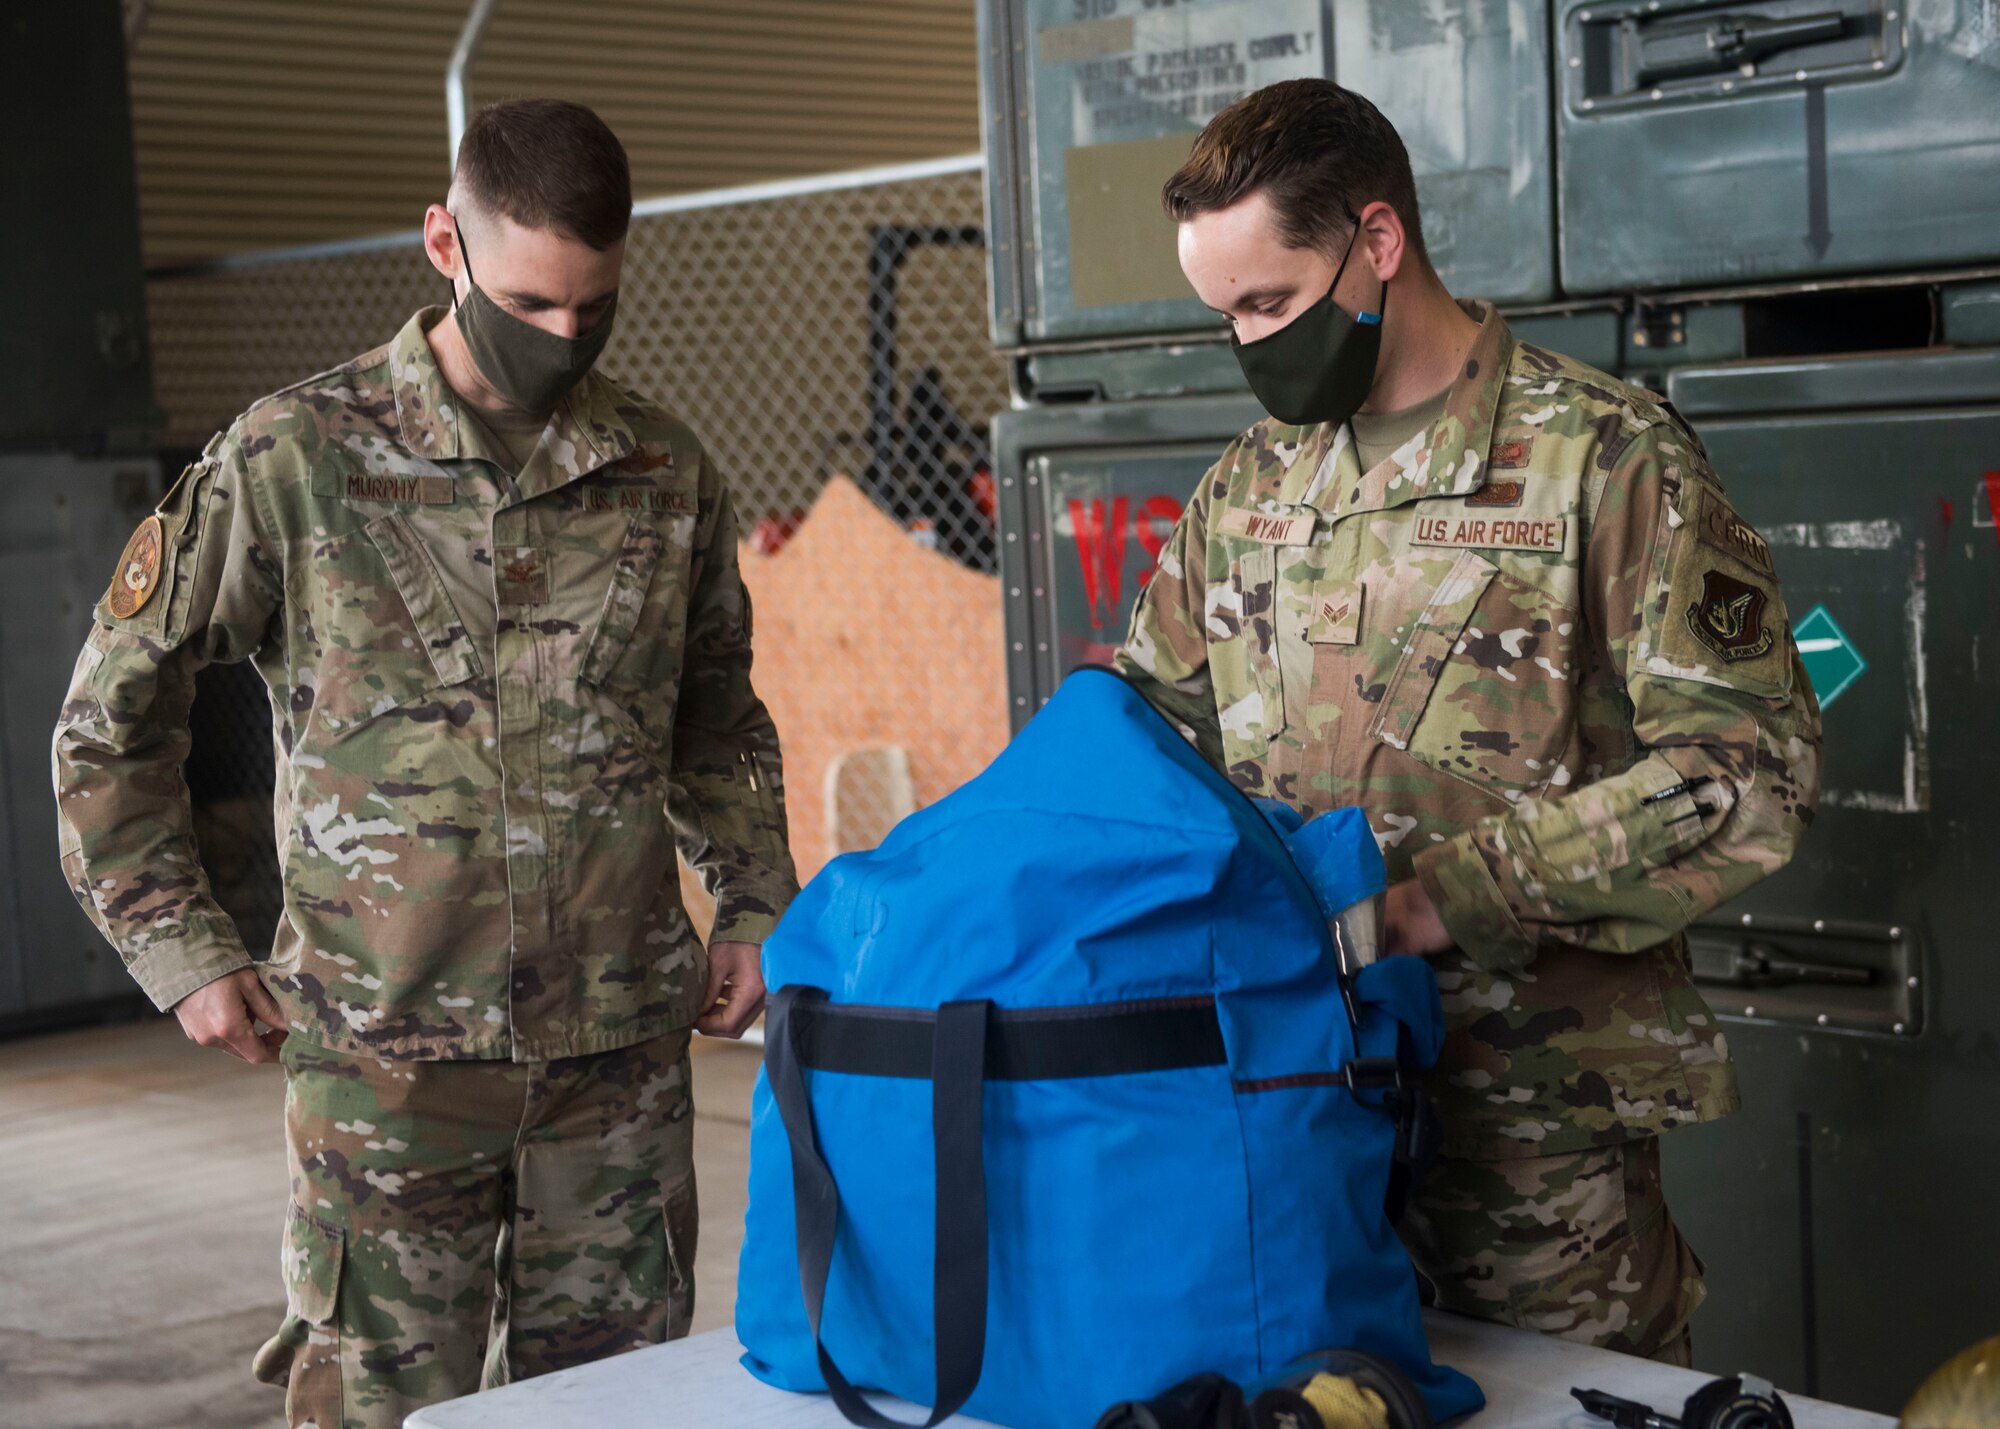 Two men in a military uniform unpack a bag containing a hazmat suit.